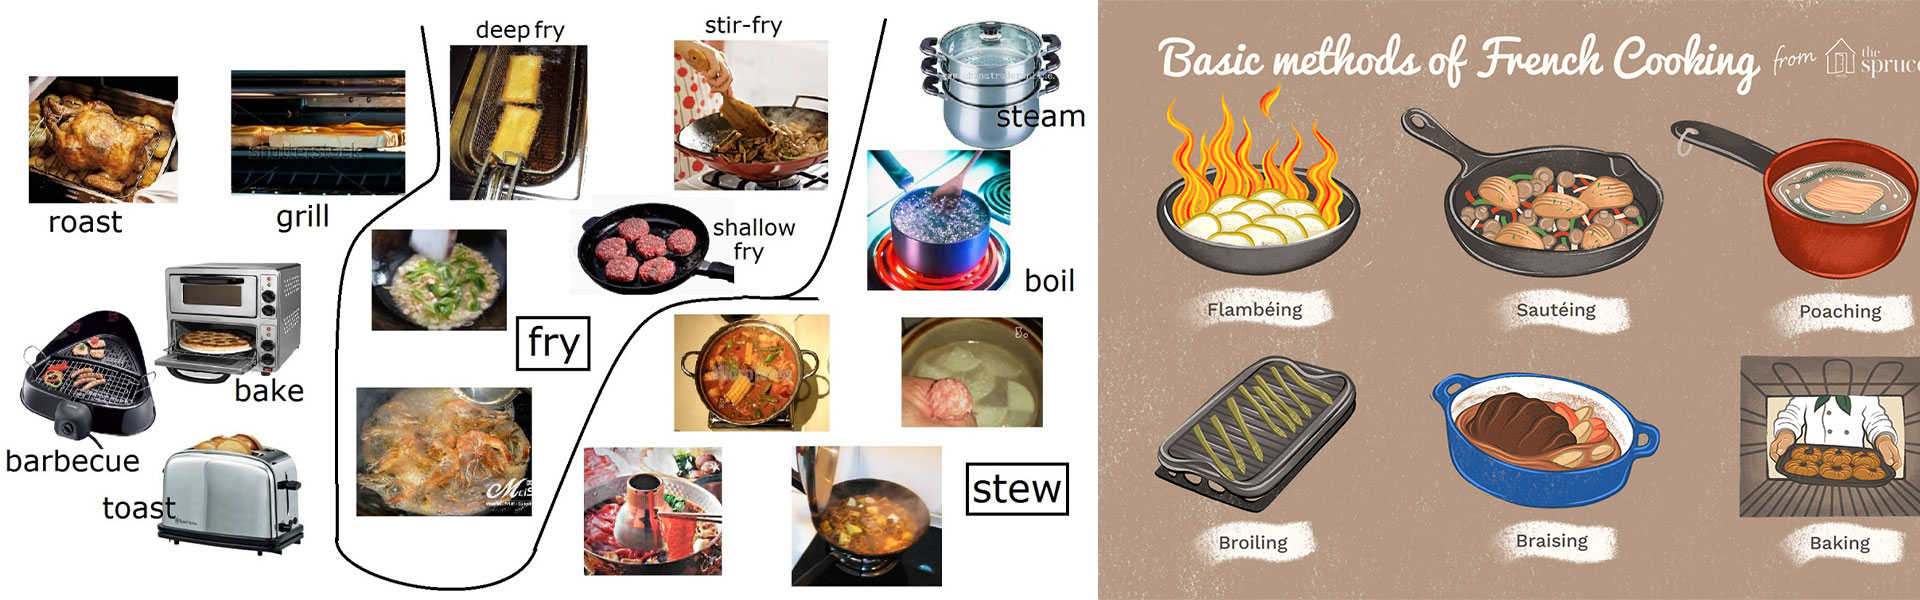 روش های پخت و پز در آشپزی حرفه ای مخصوص سرآشپزان حرفه ای